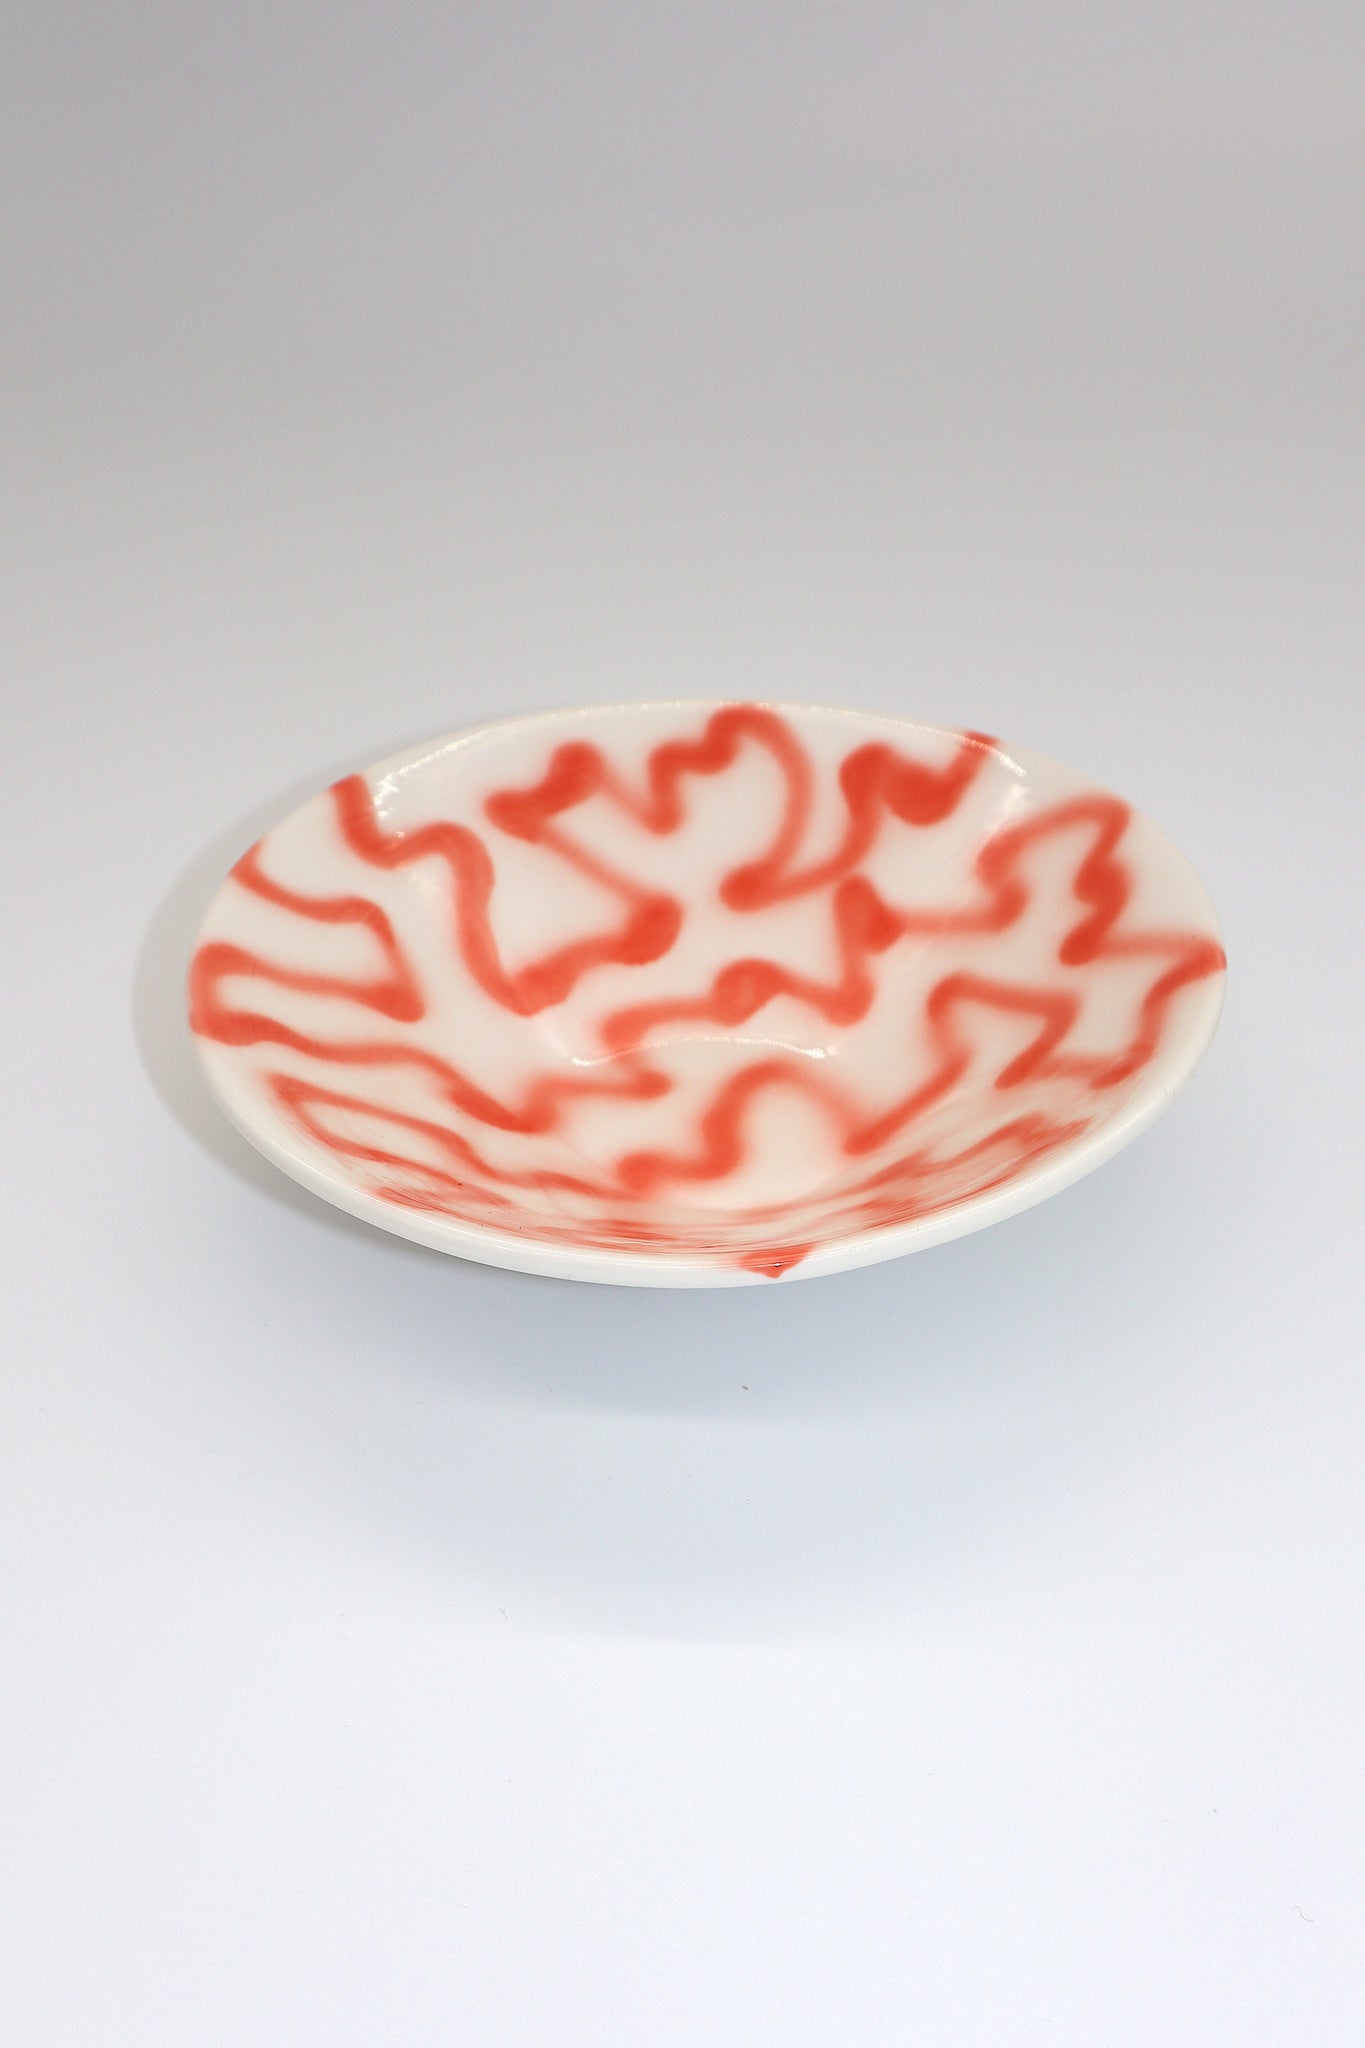 Plot Bowl by Frizbee Ceramics